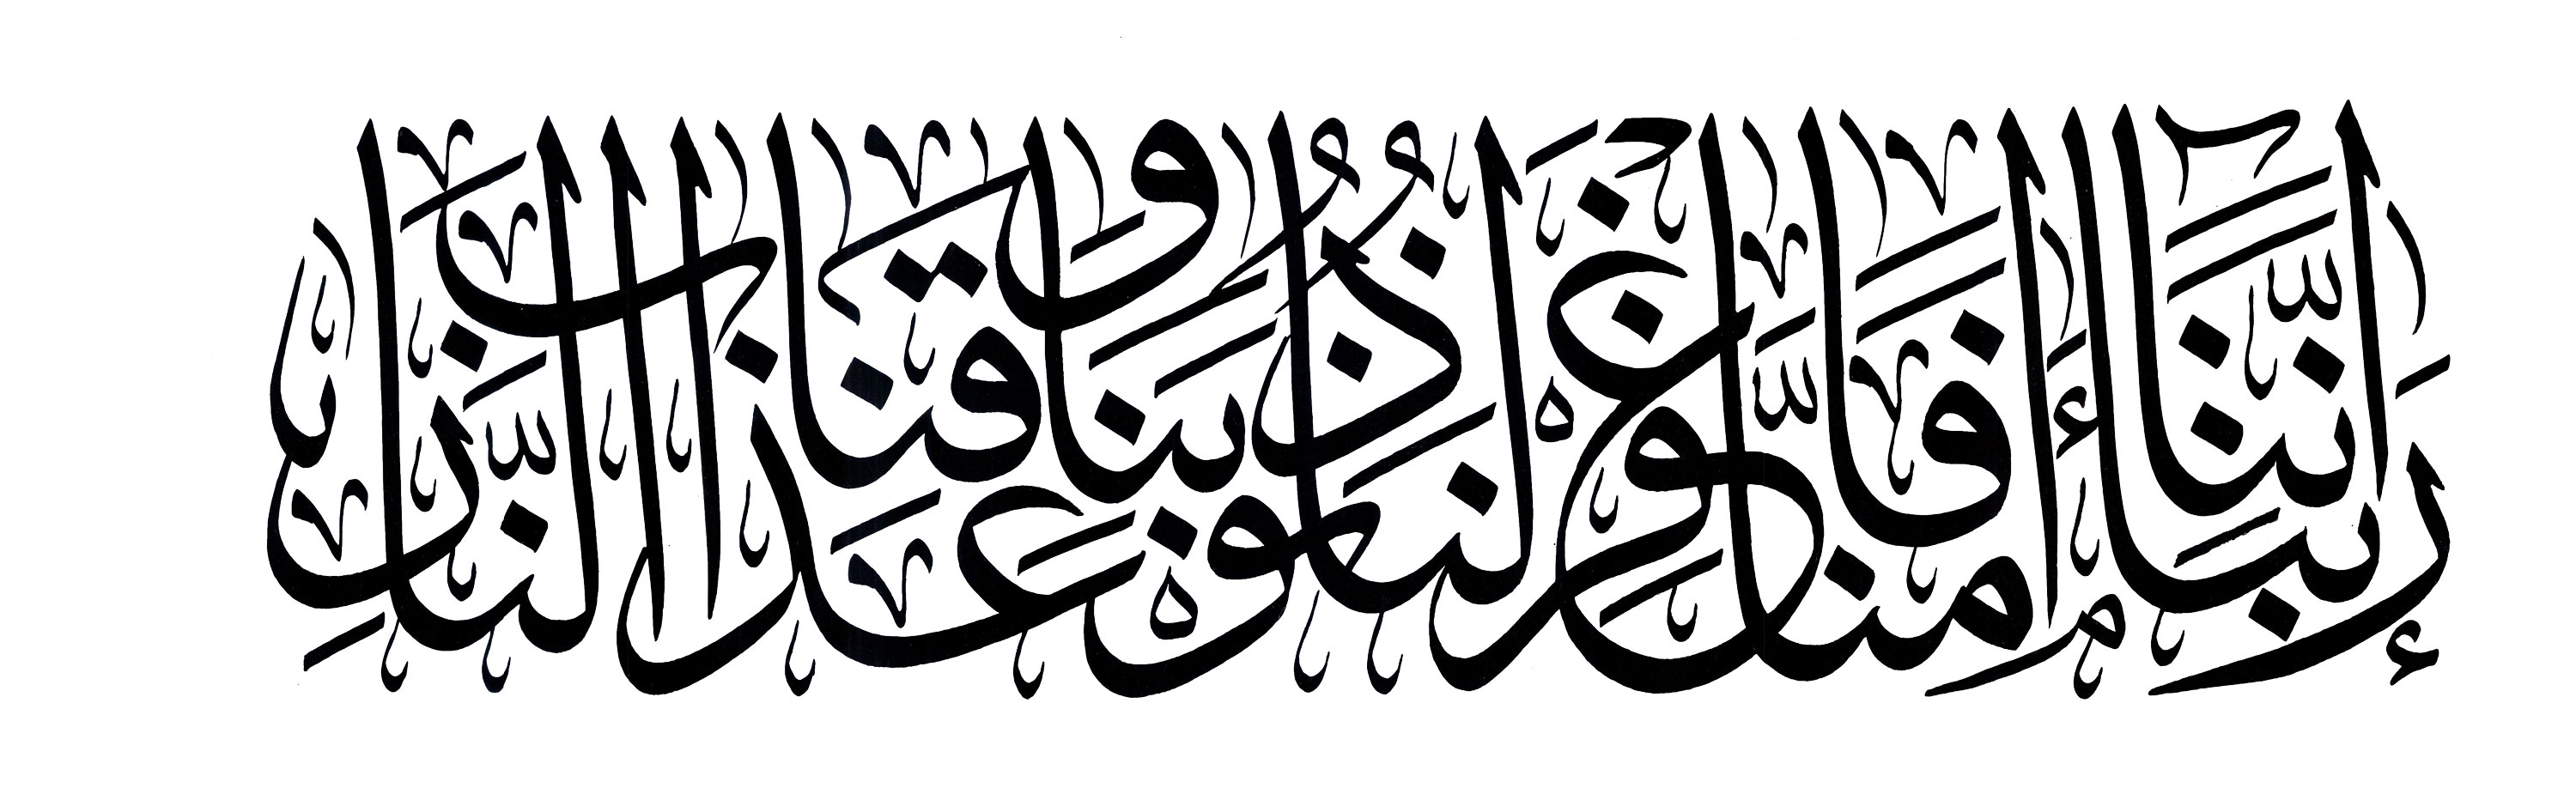 Free Islamic Calligraphy | Aal `Imran 3, 16